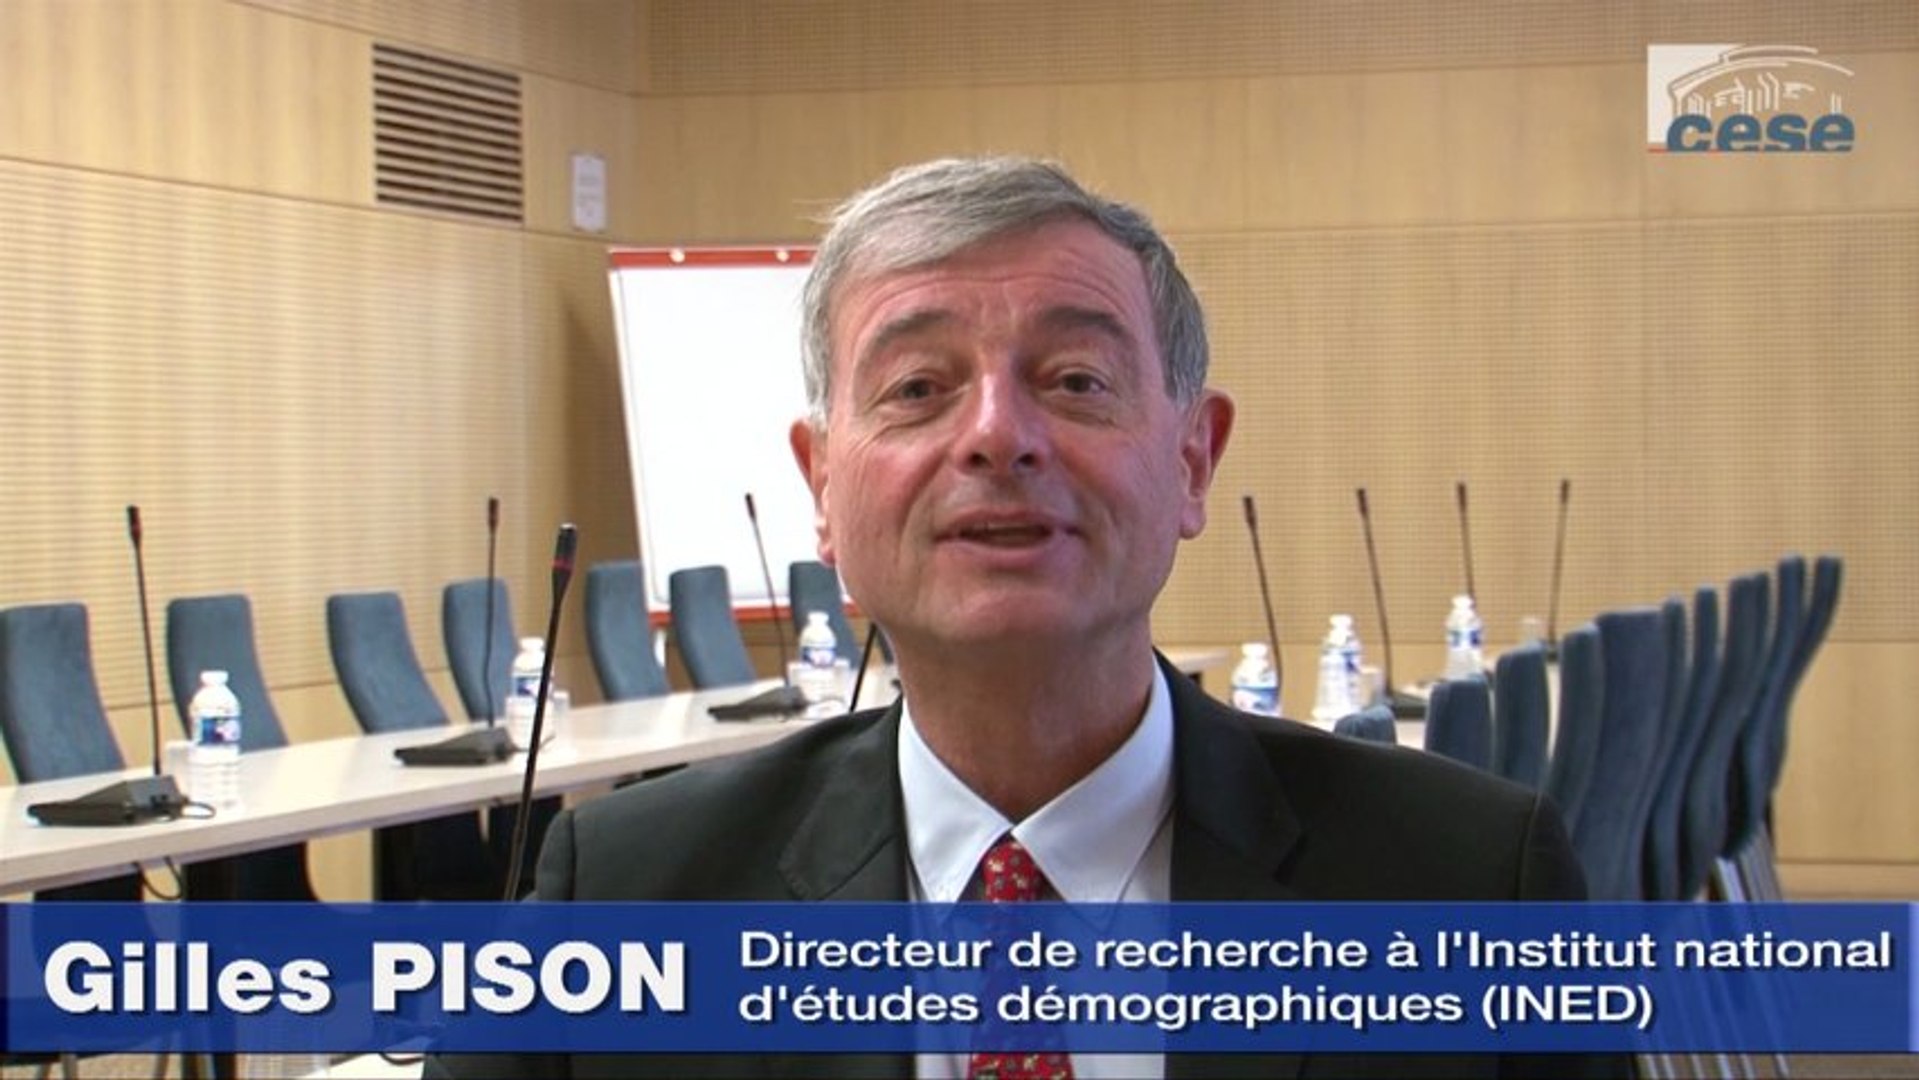 Interview de Gilles Pison - cese - Vidéo Dailymotion